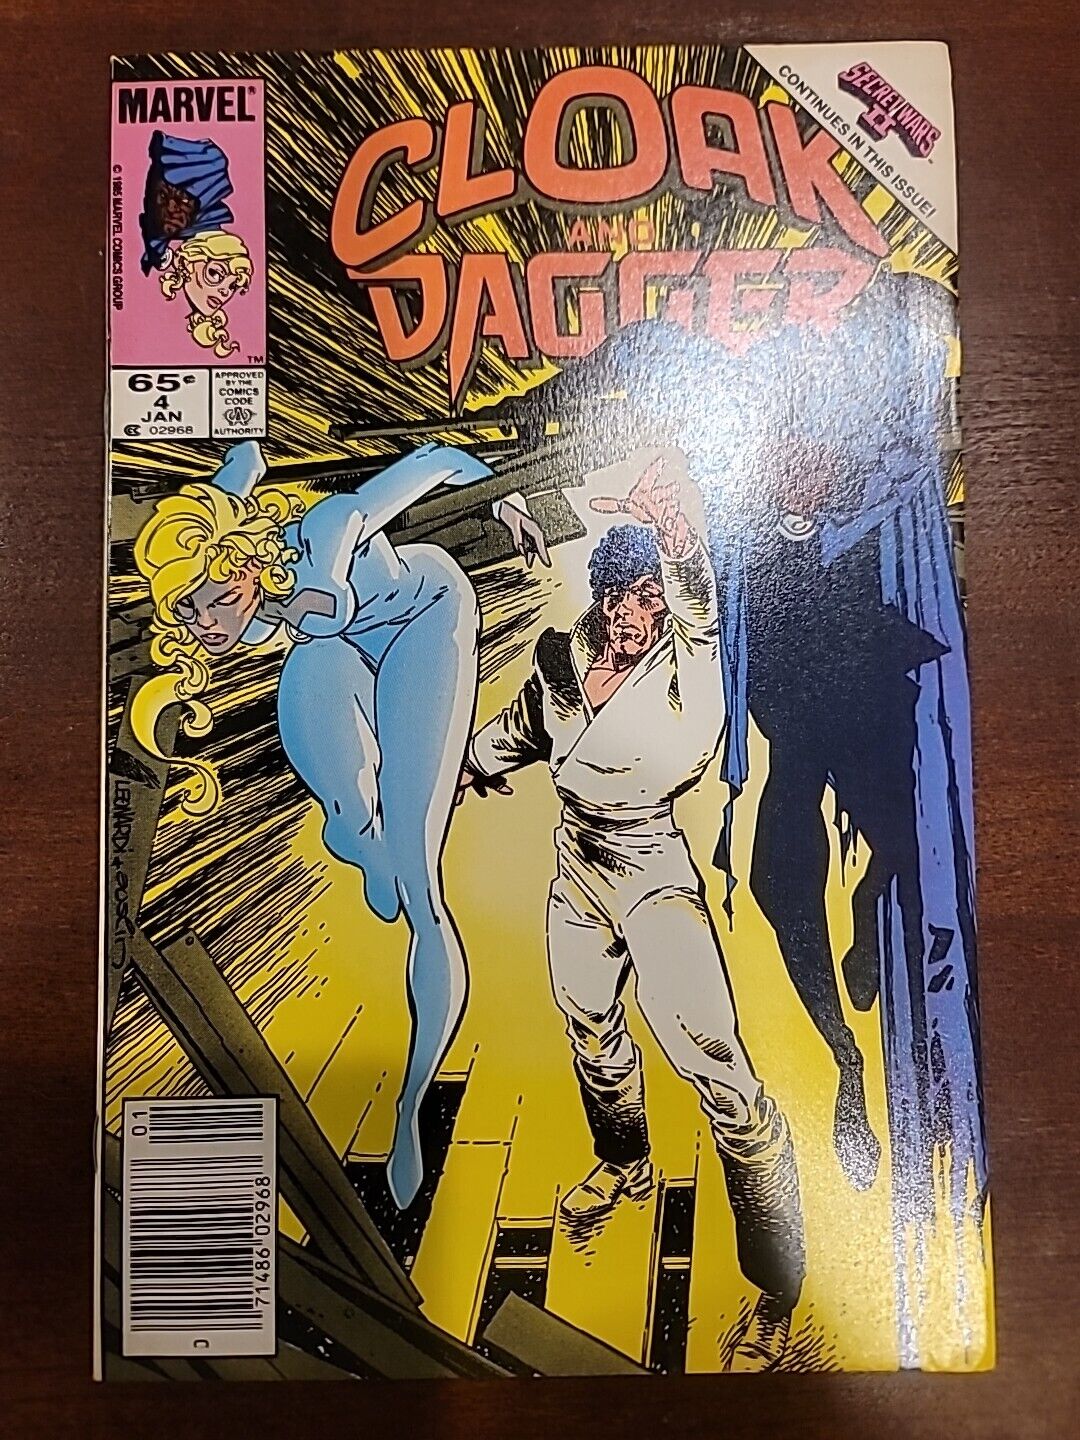 Cloak and Dagger #4 Marvel 1986 VF/NM SECRET WARS EDITION